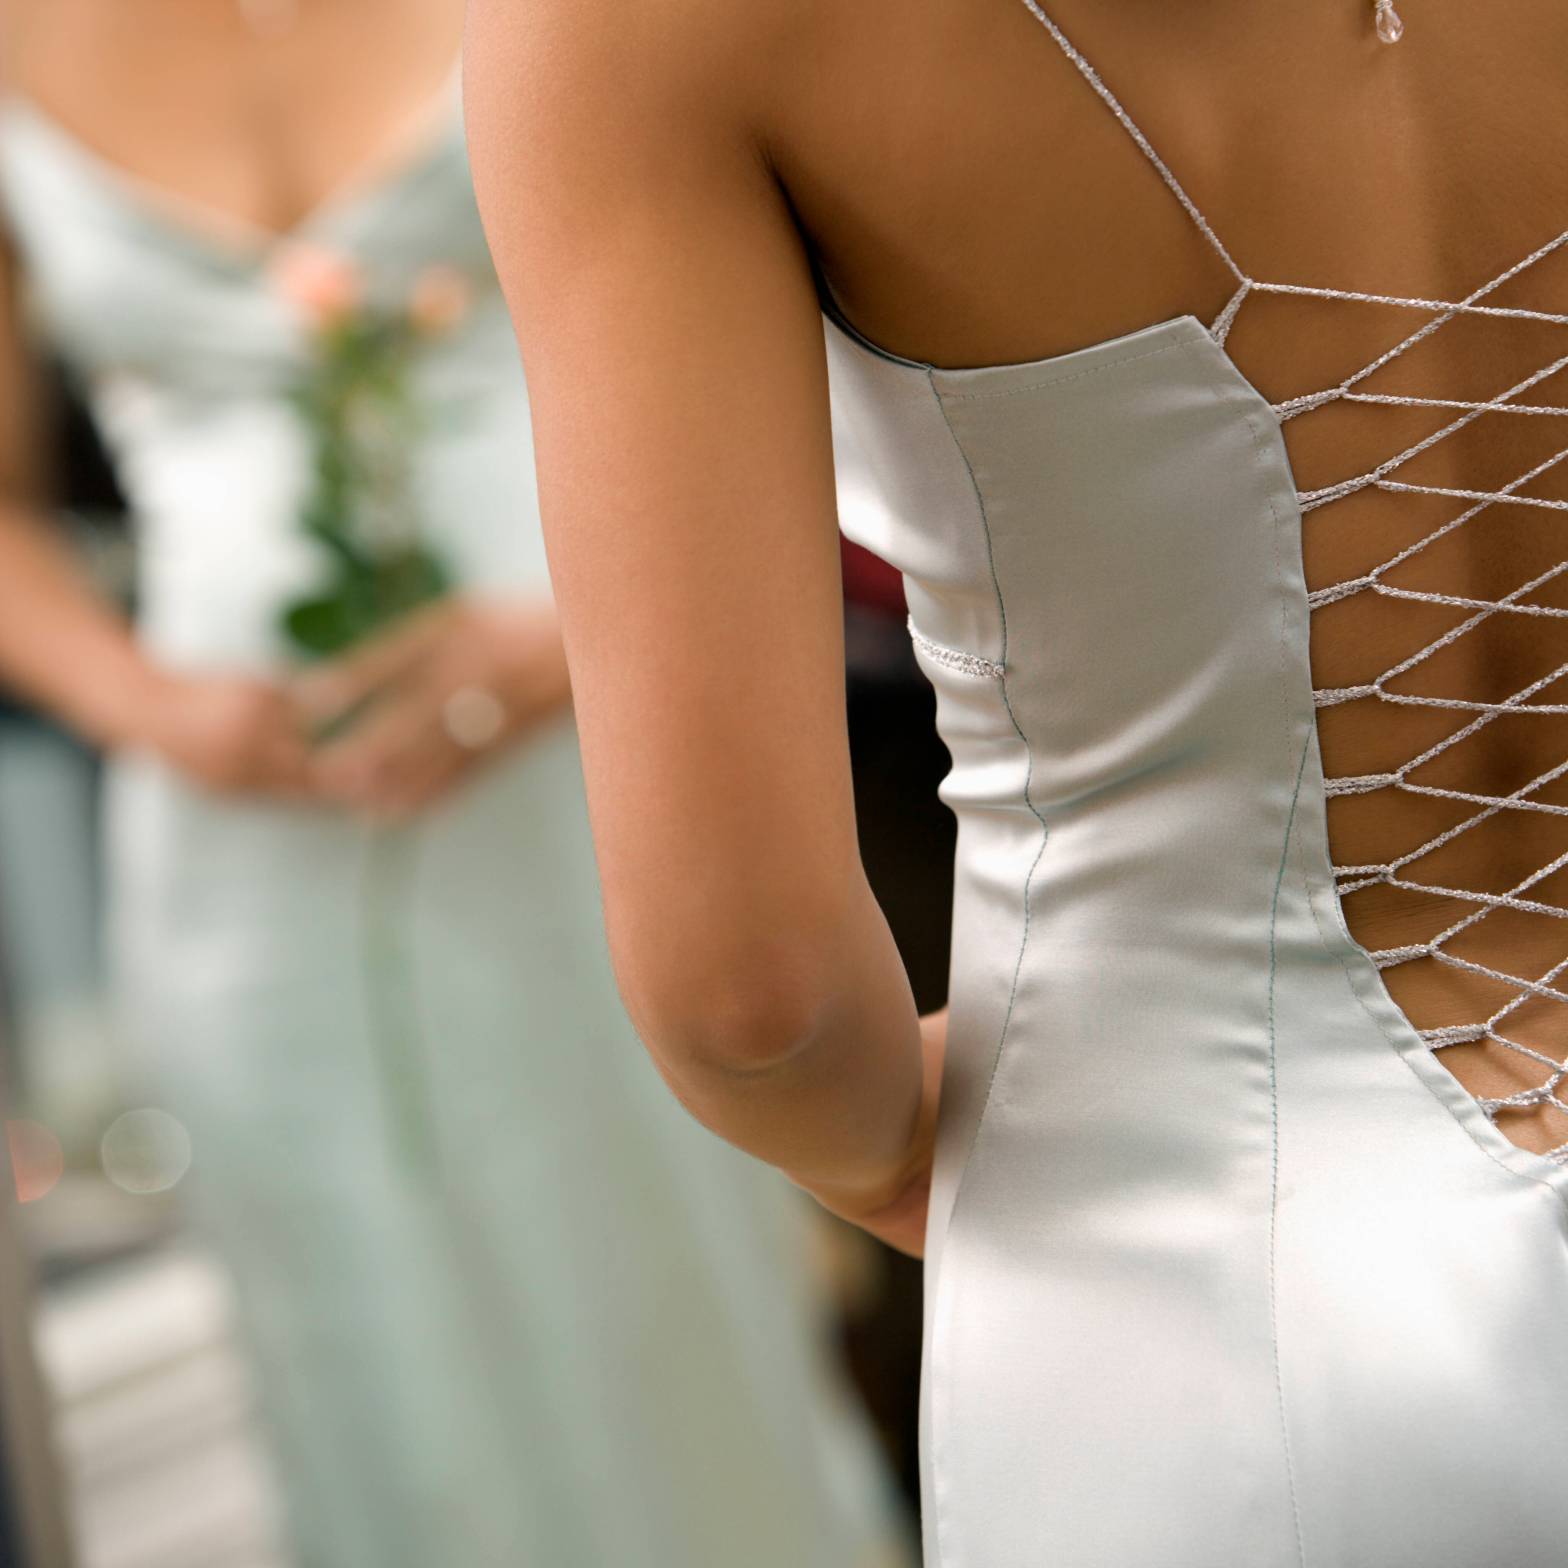 Hochzeit: Frau will in DIESEM Kleid zur Trauung – doch ihr Mann verbietet es